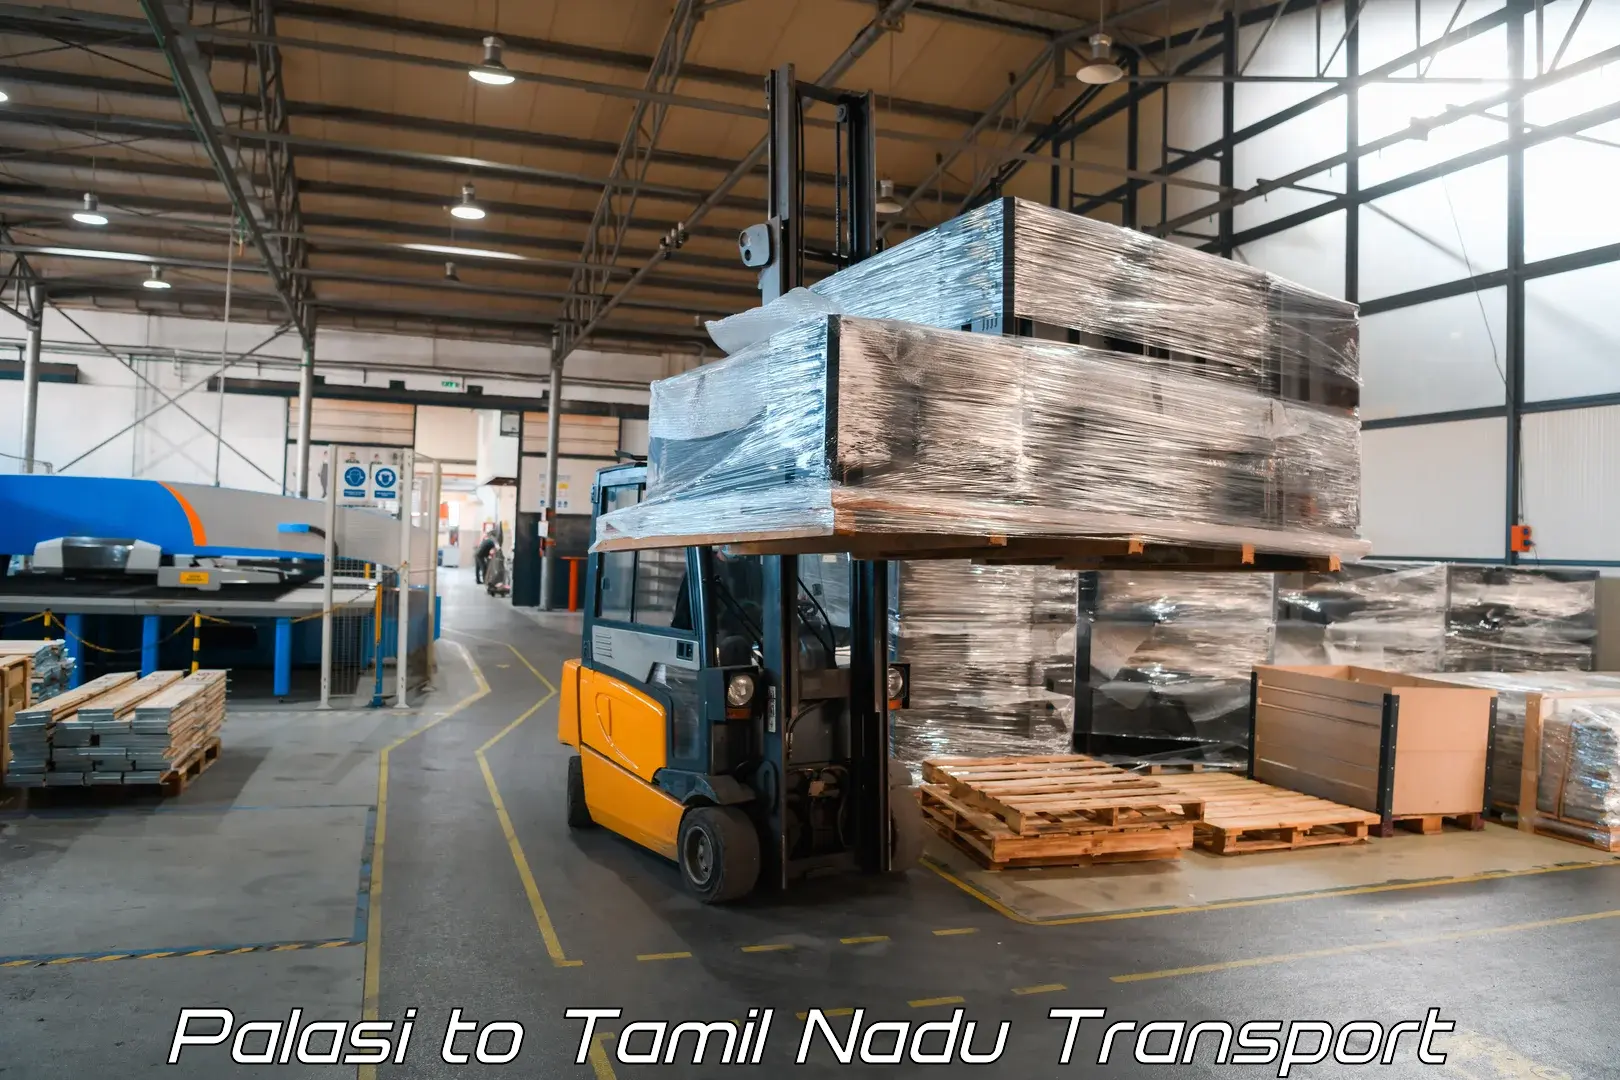 All India transport service Palasi to Kodaikanal